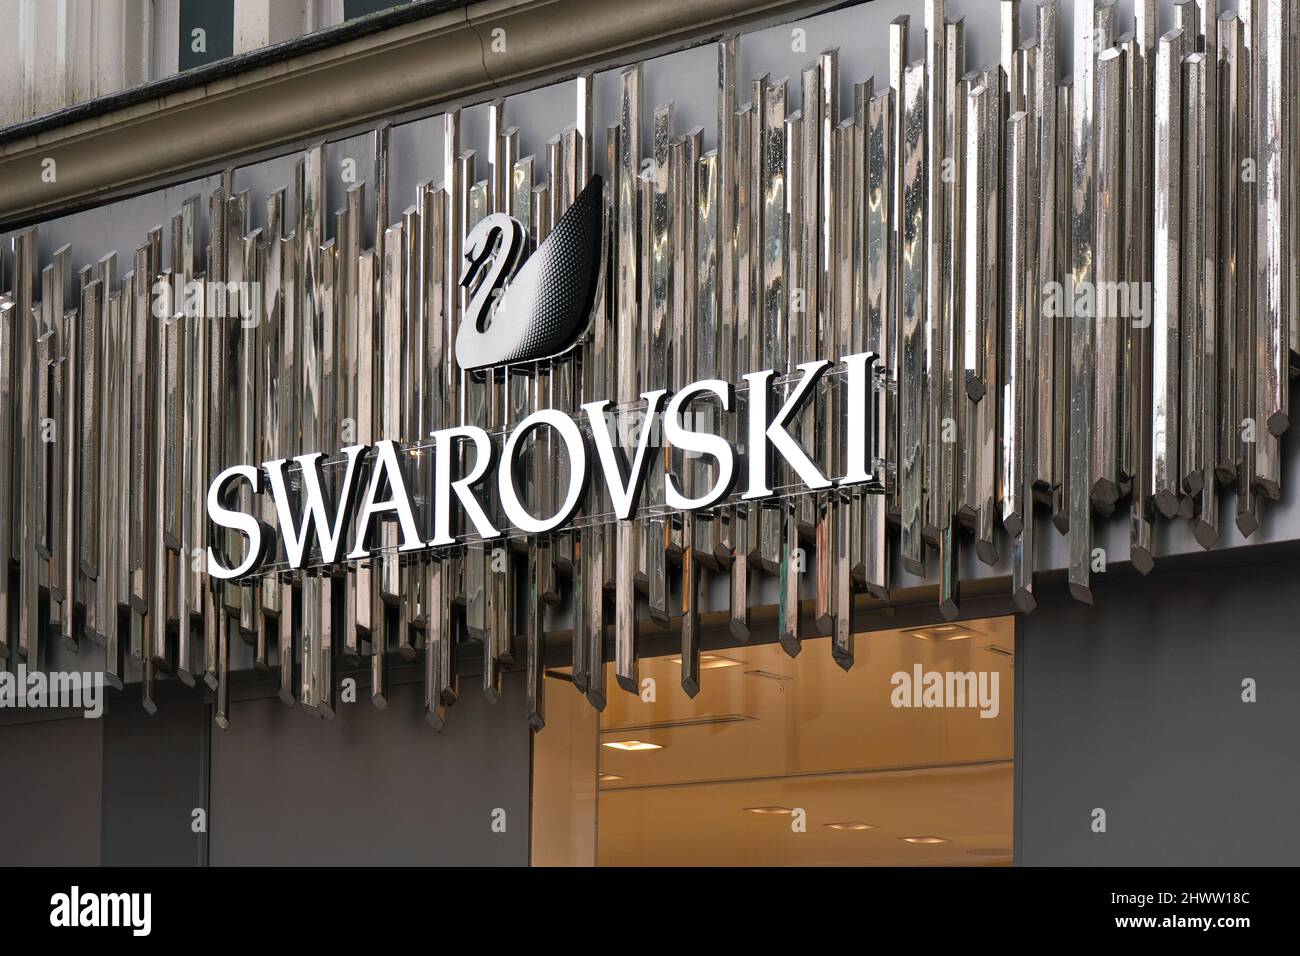 Londres, Royaume-Uni - 01 février 2019 : le cygne blanc et le logo de texte sur la boutique Swarovski de leur succursale d'Oxford Street. Il est producteur autrichien de cryst Banque D'Images